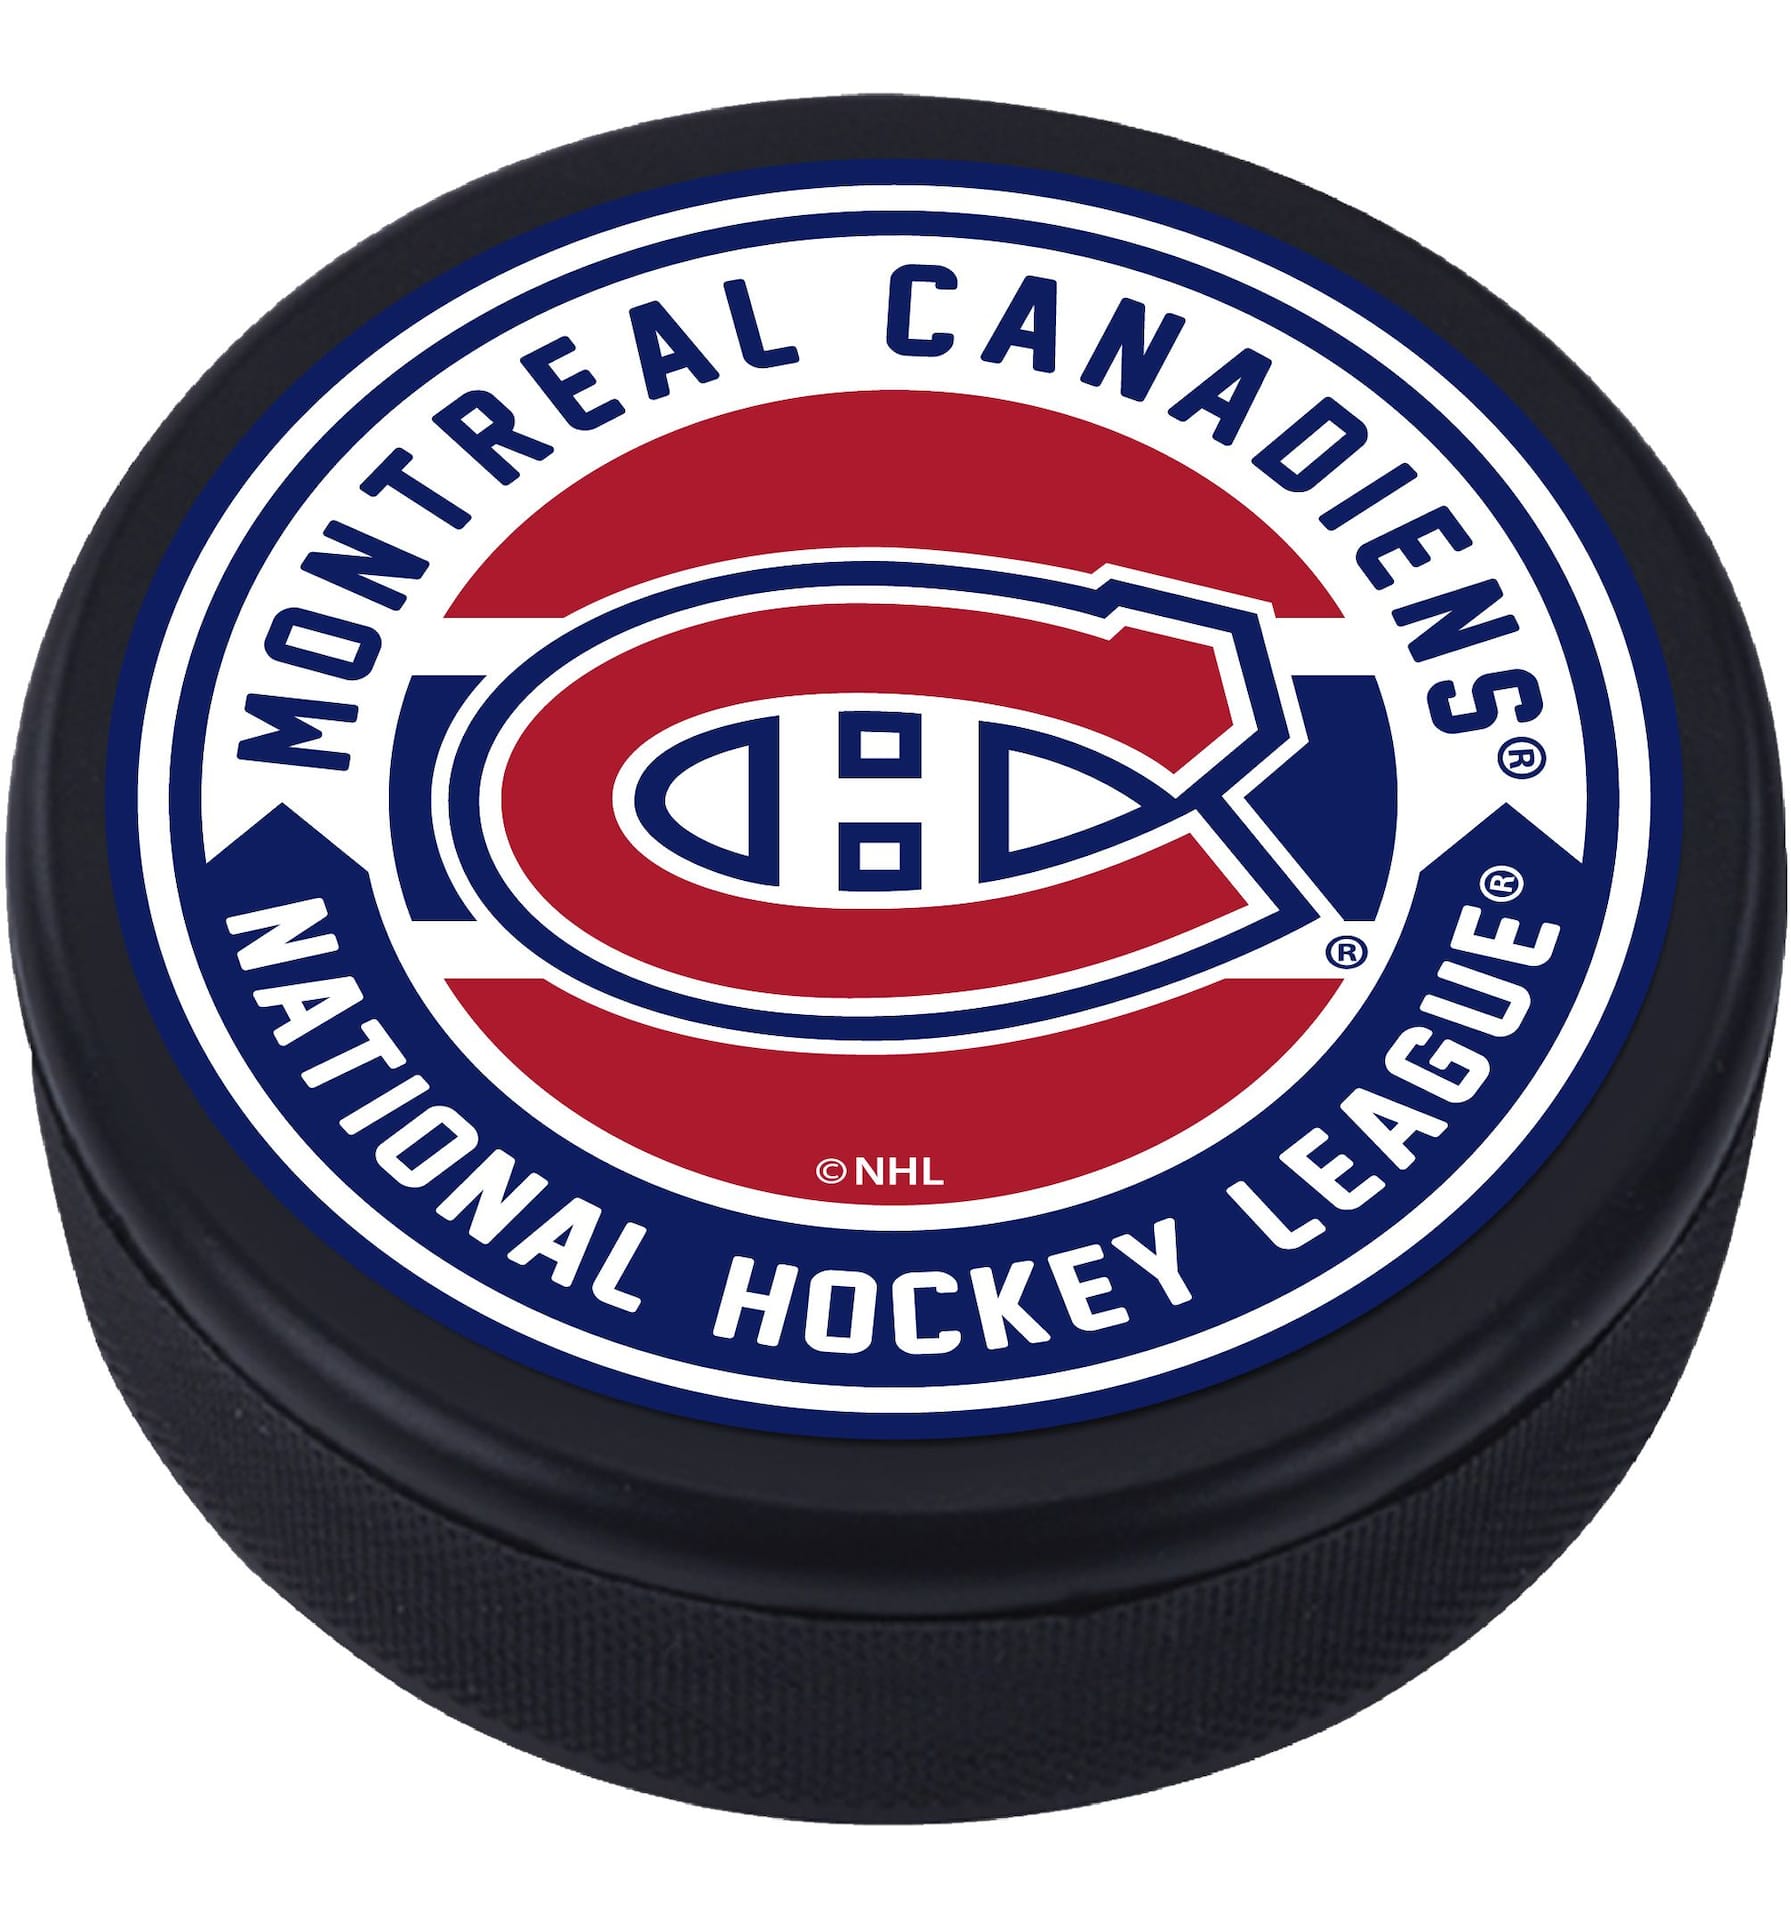 Official Montréal Canadiens Website